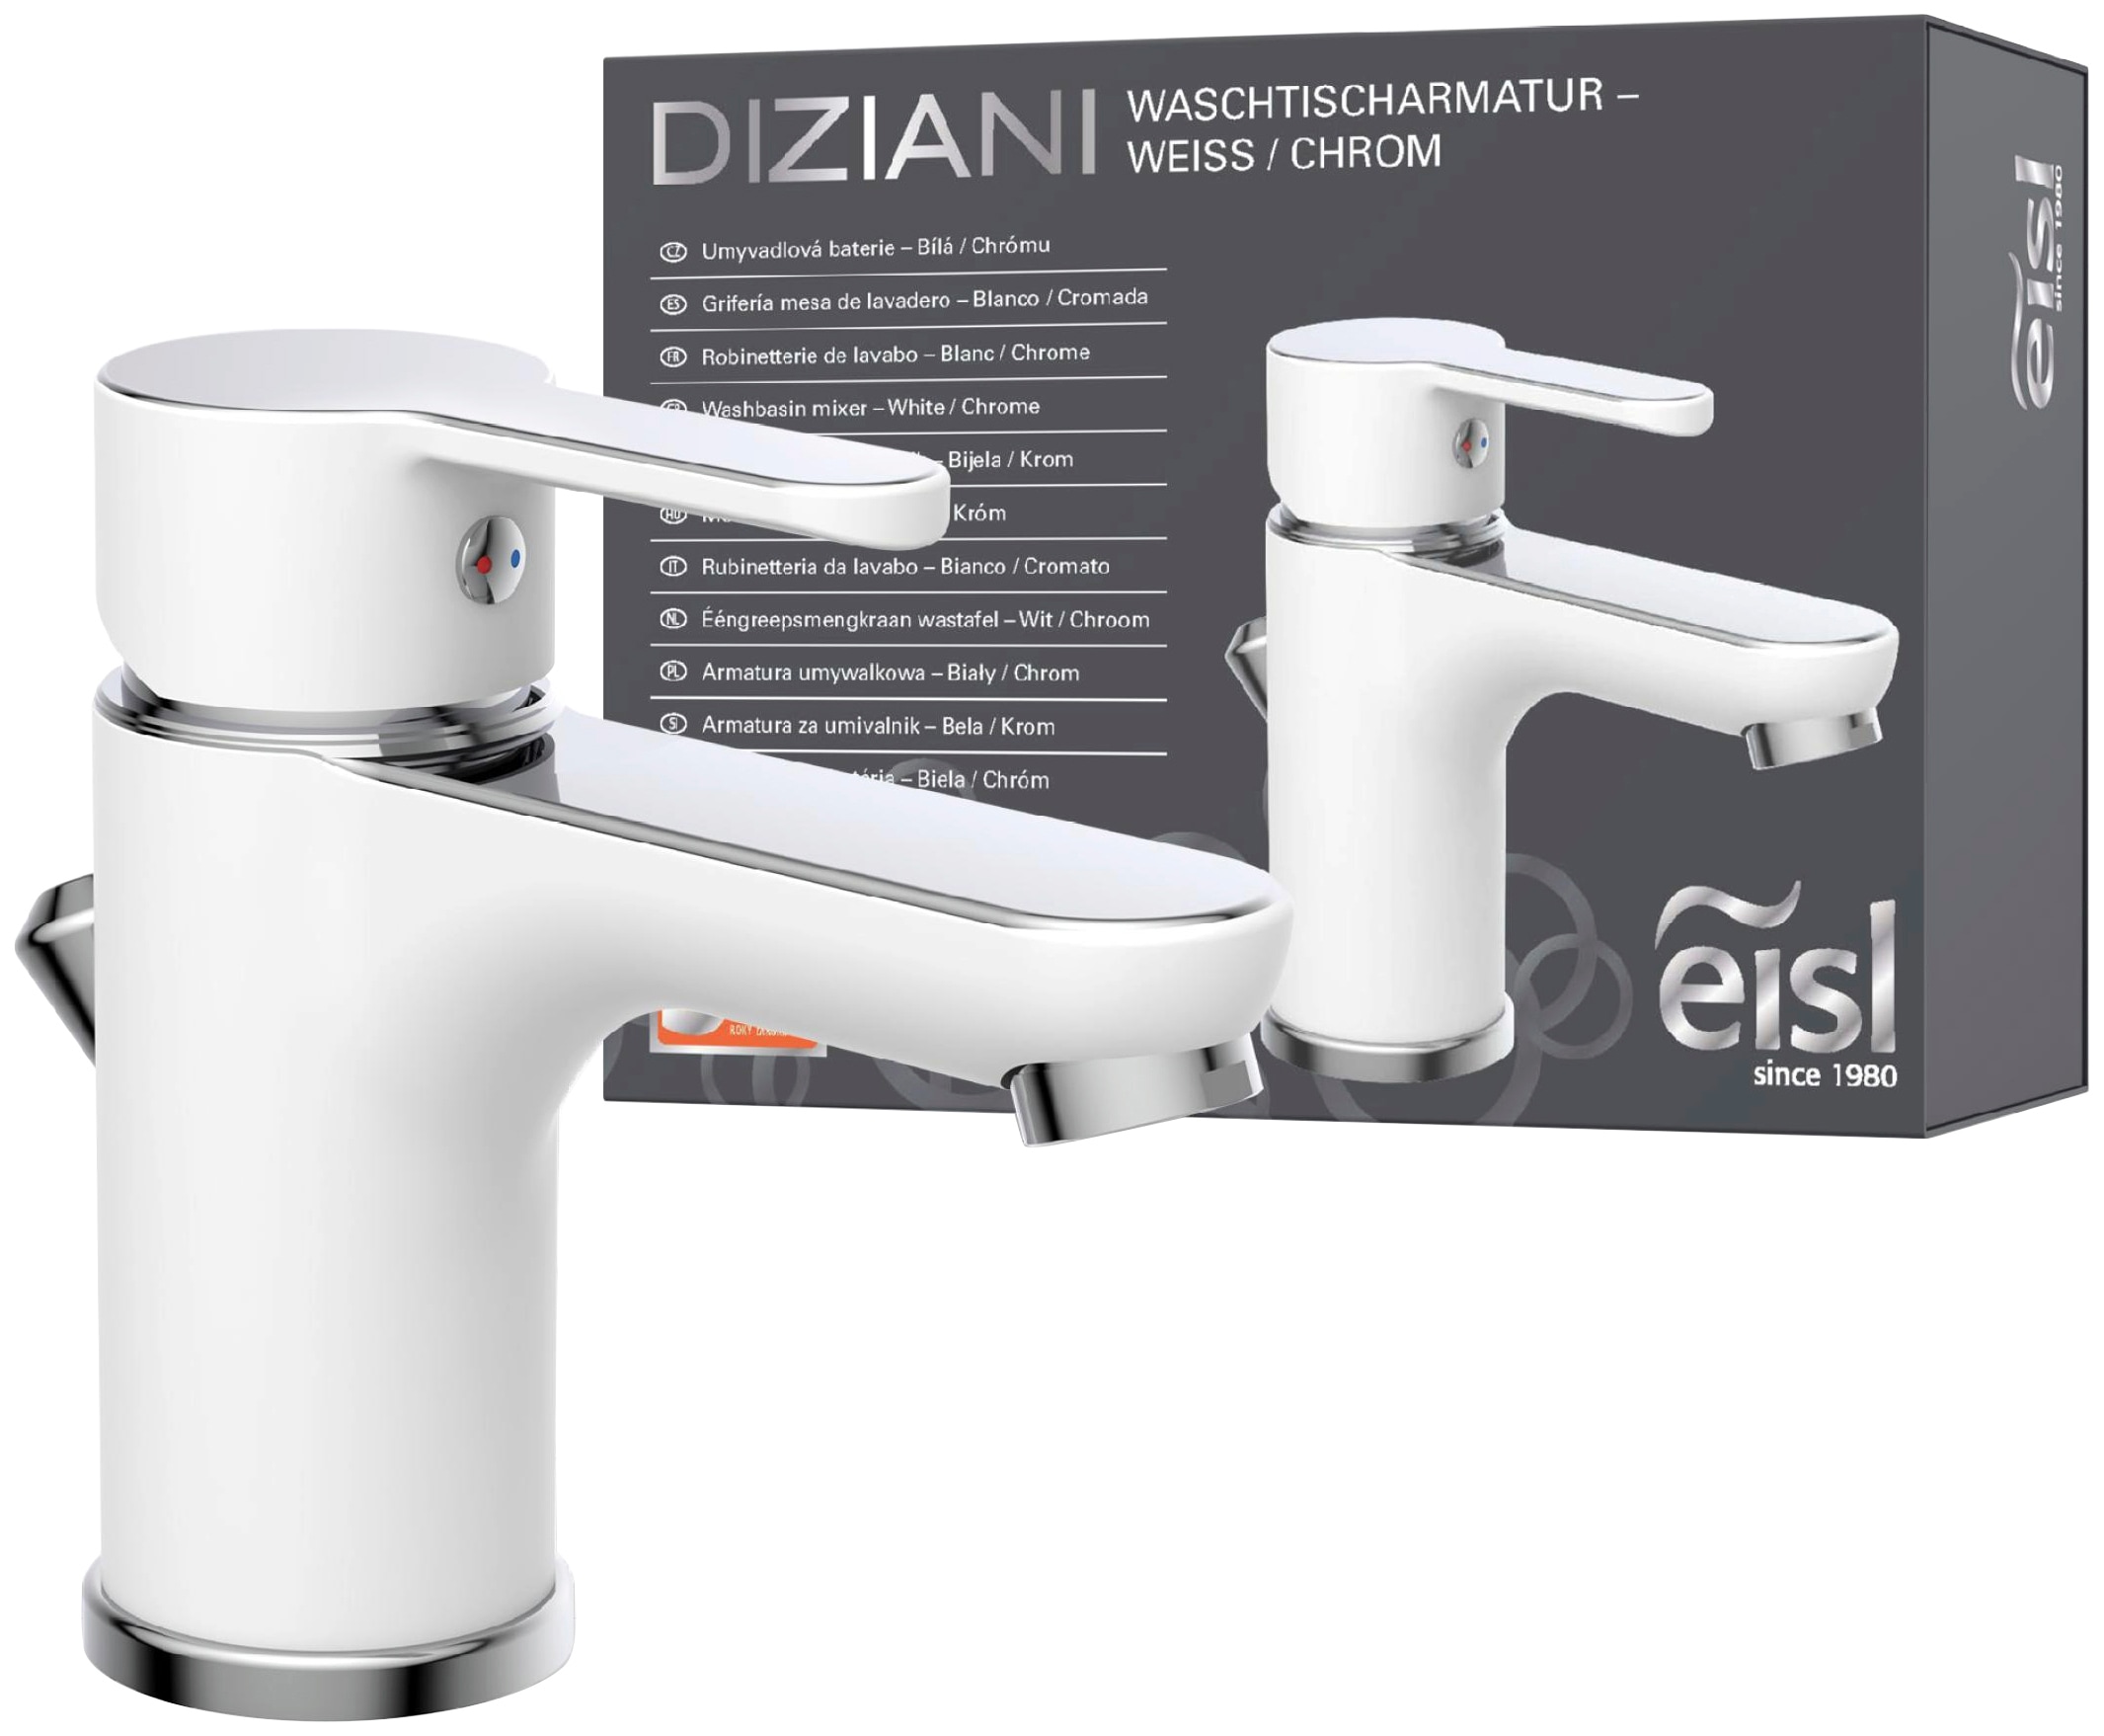 Eisl Waschtischarmatur "Diziani", mit Zugstange, Wasserhahn mit Ablaufgarnitur, Mischbatterie